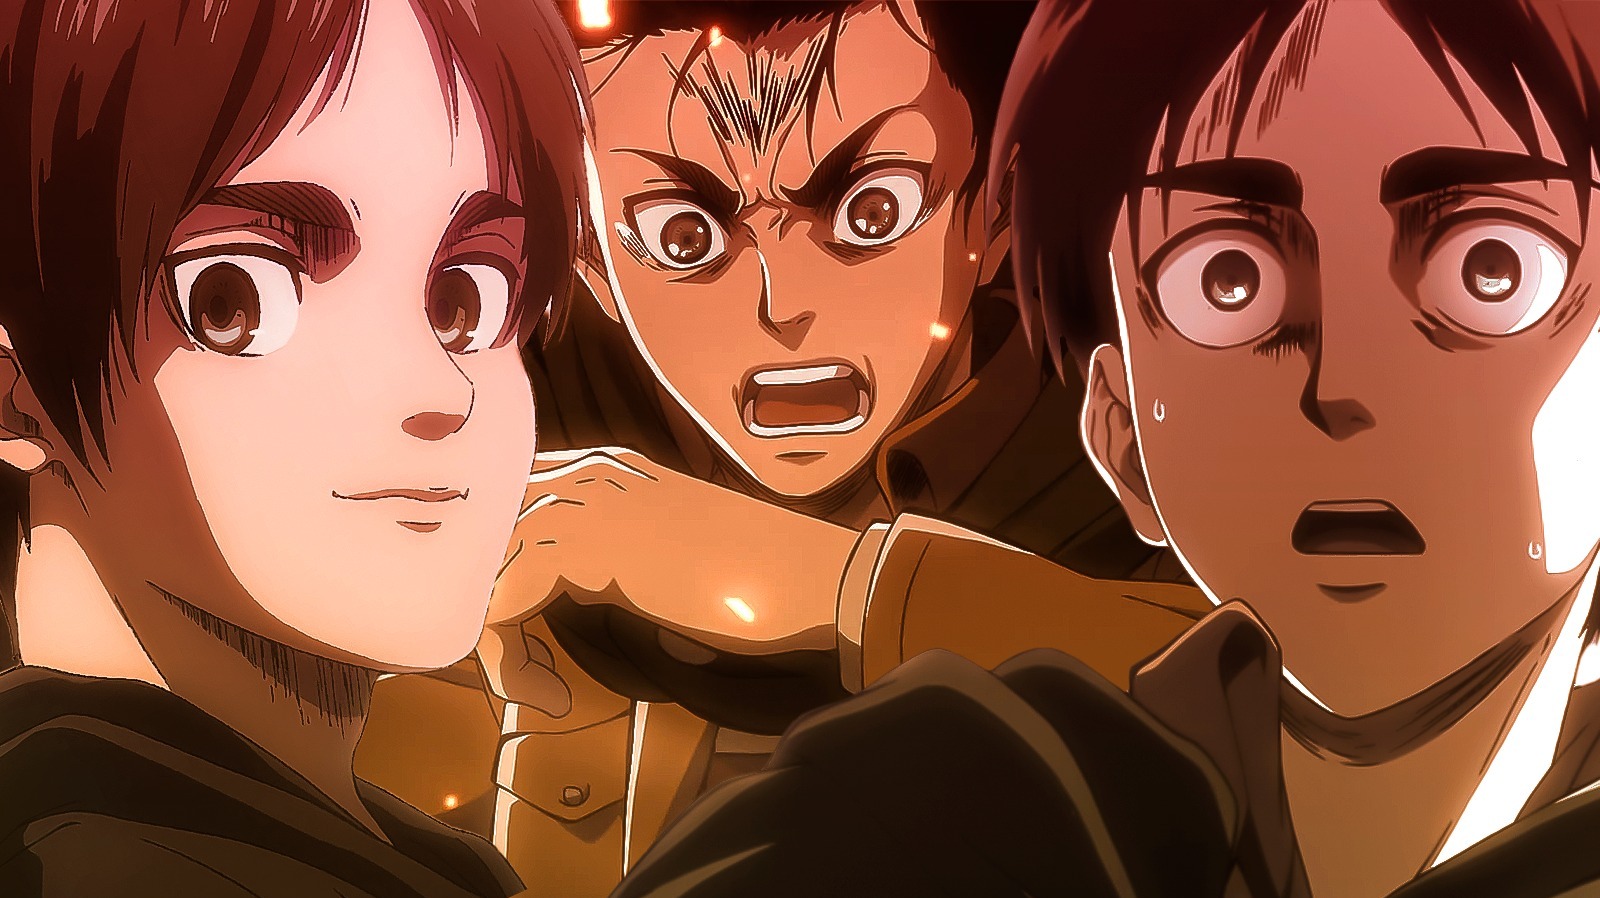 Attack on Titan Season 3 (Anime) –